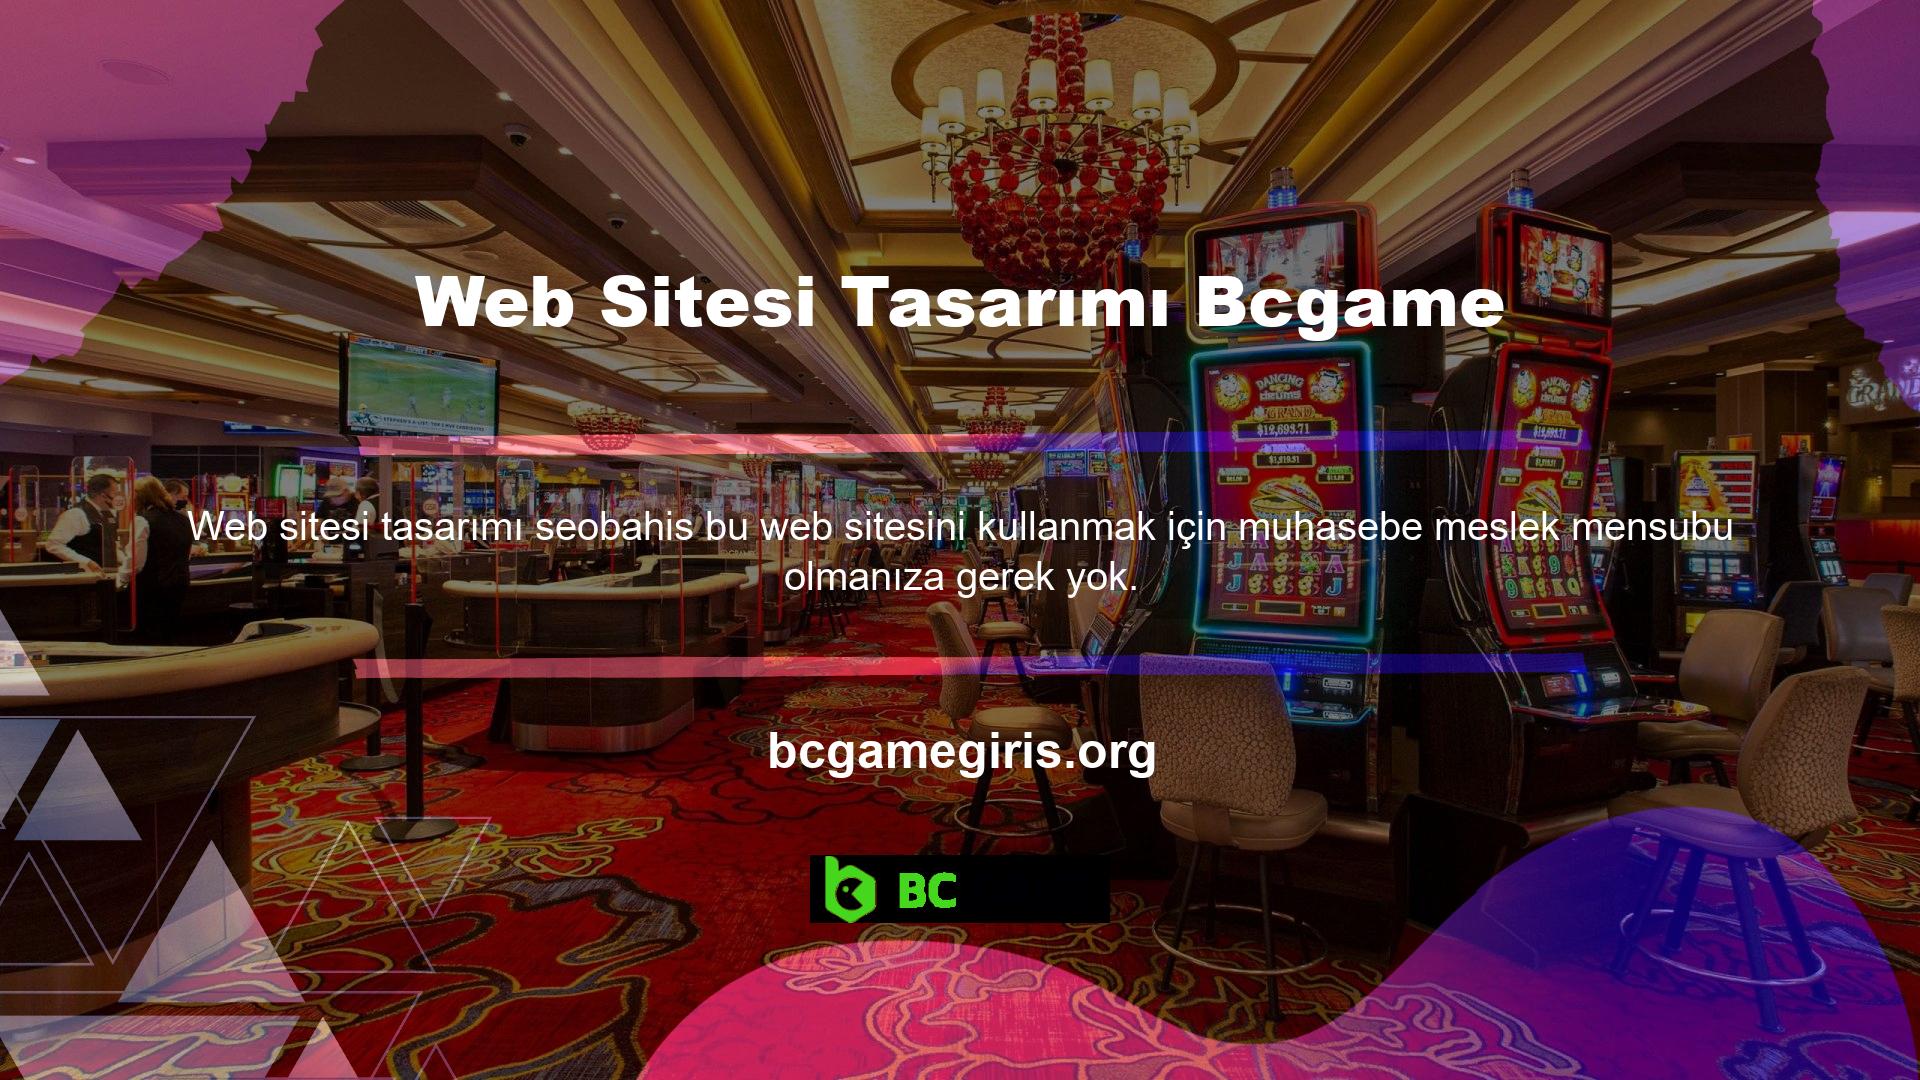 Bcgame web sitesi, yeni başlayanların bile bahis oynamasına olanak sağlayacak şekilde özenle tasarlanmıştır